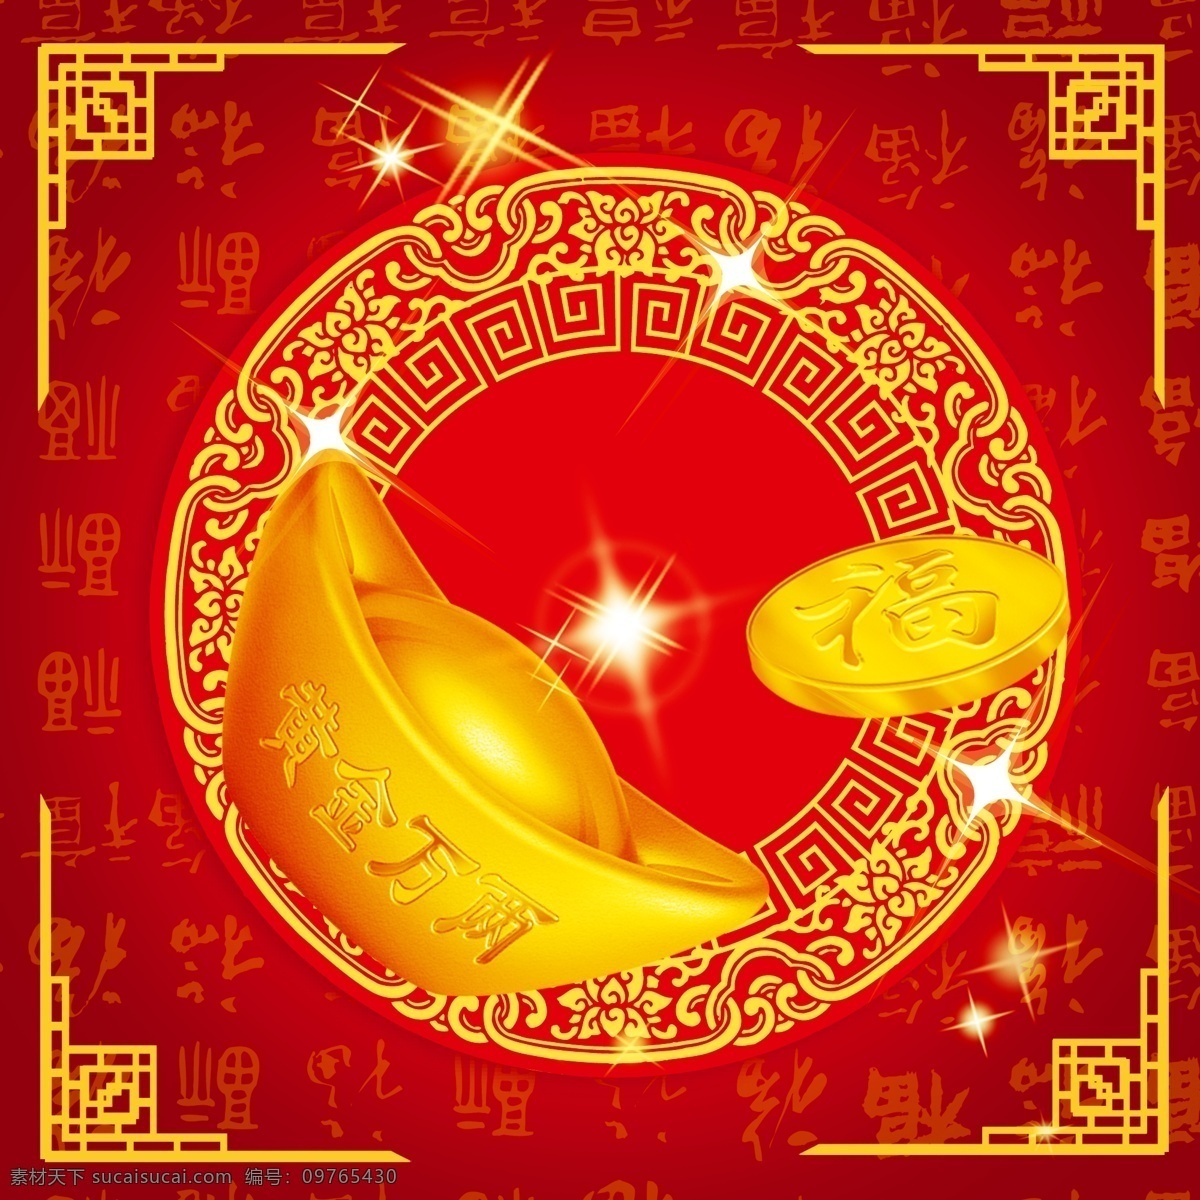 中国 风 新年 广告 黄金 元宝 百福图 2015 羊年海报 春节海报 星光 光芒 红色背景